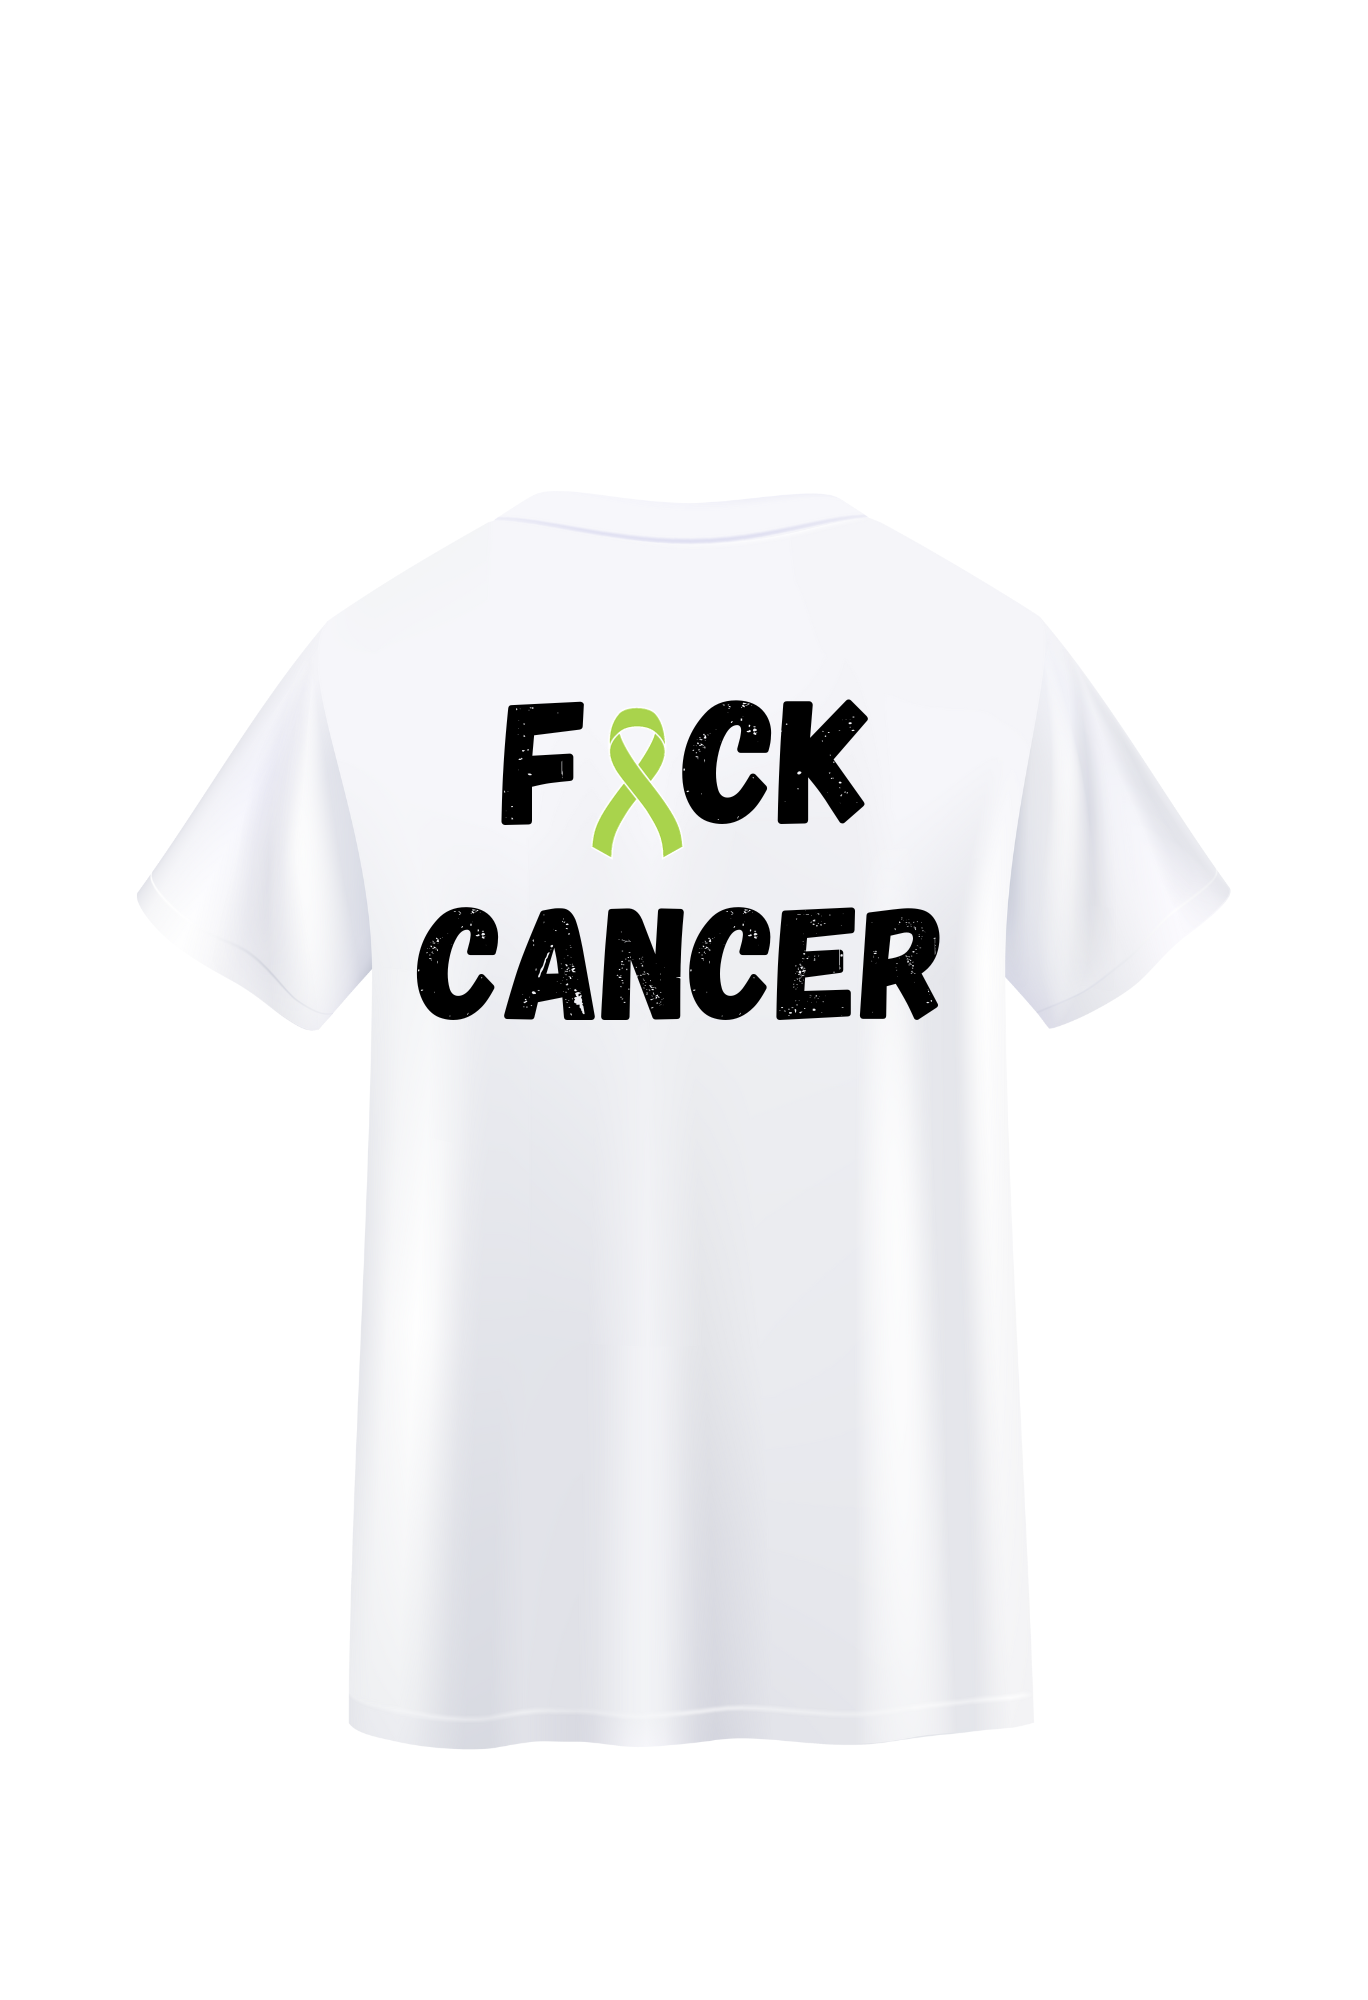 KADENTHESTRONG (FK CANCER ON BACK)